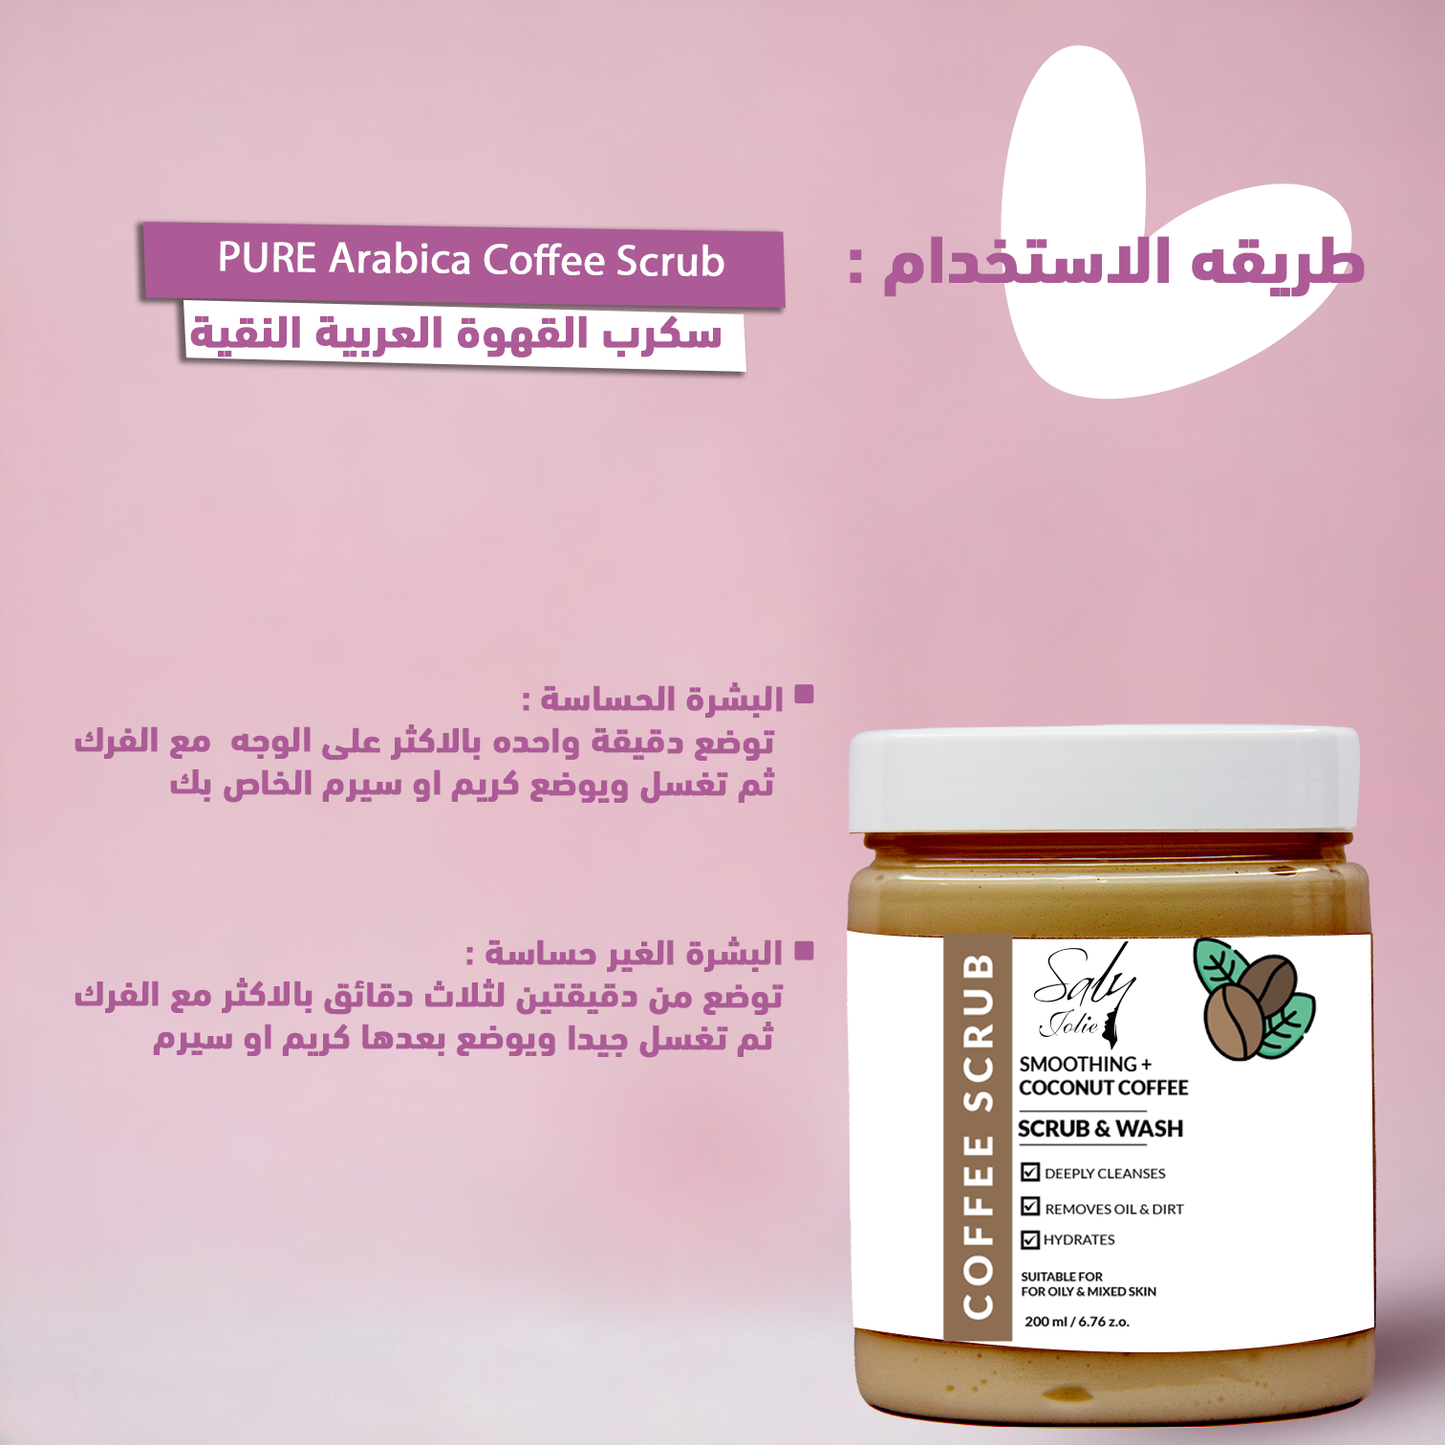 PURE Arabica Coffee Scrub